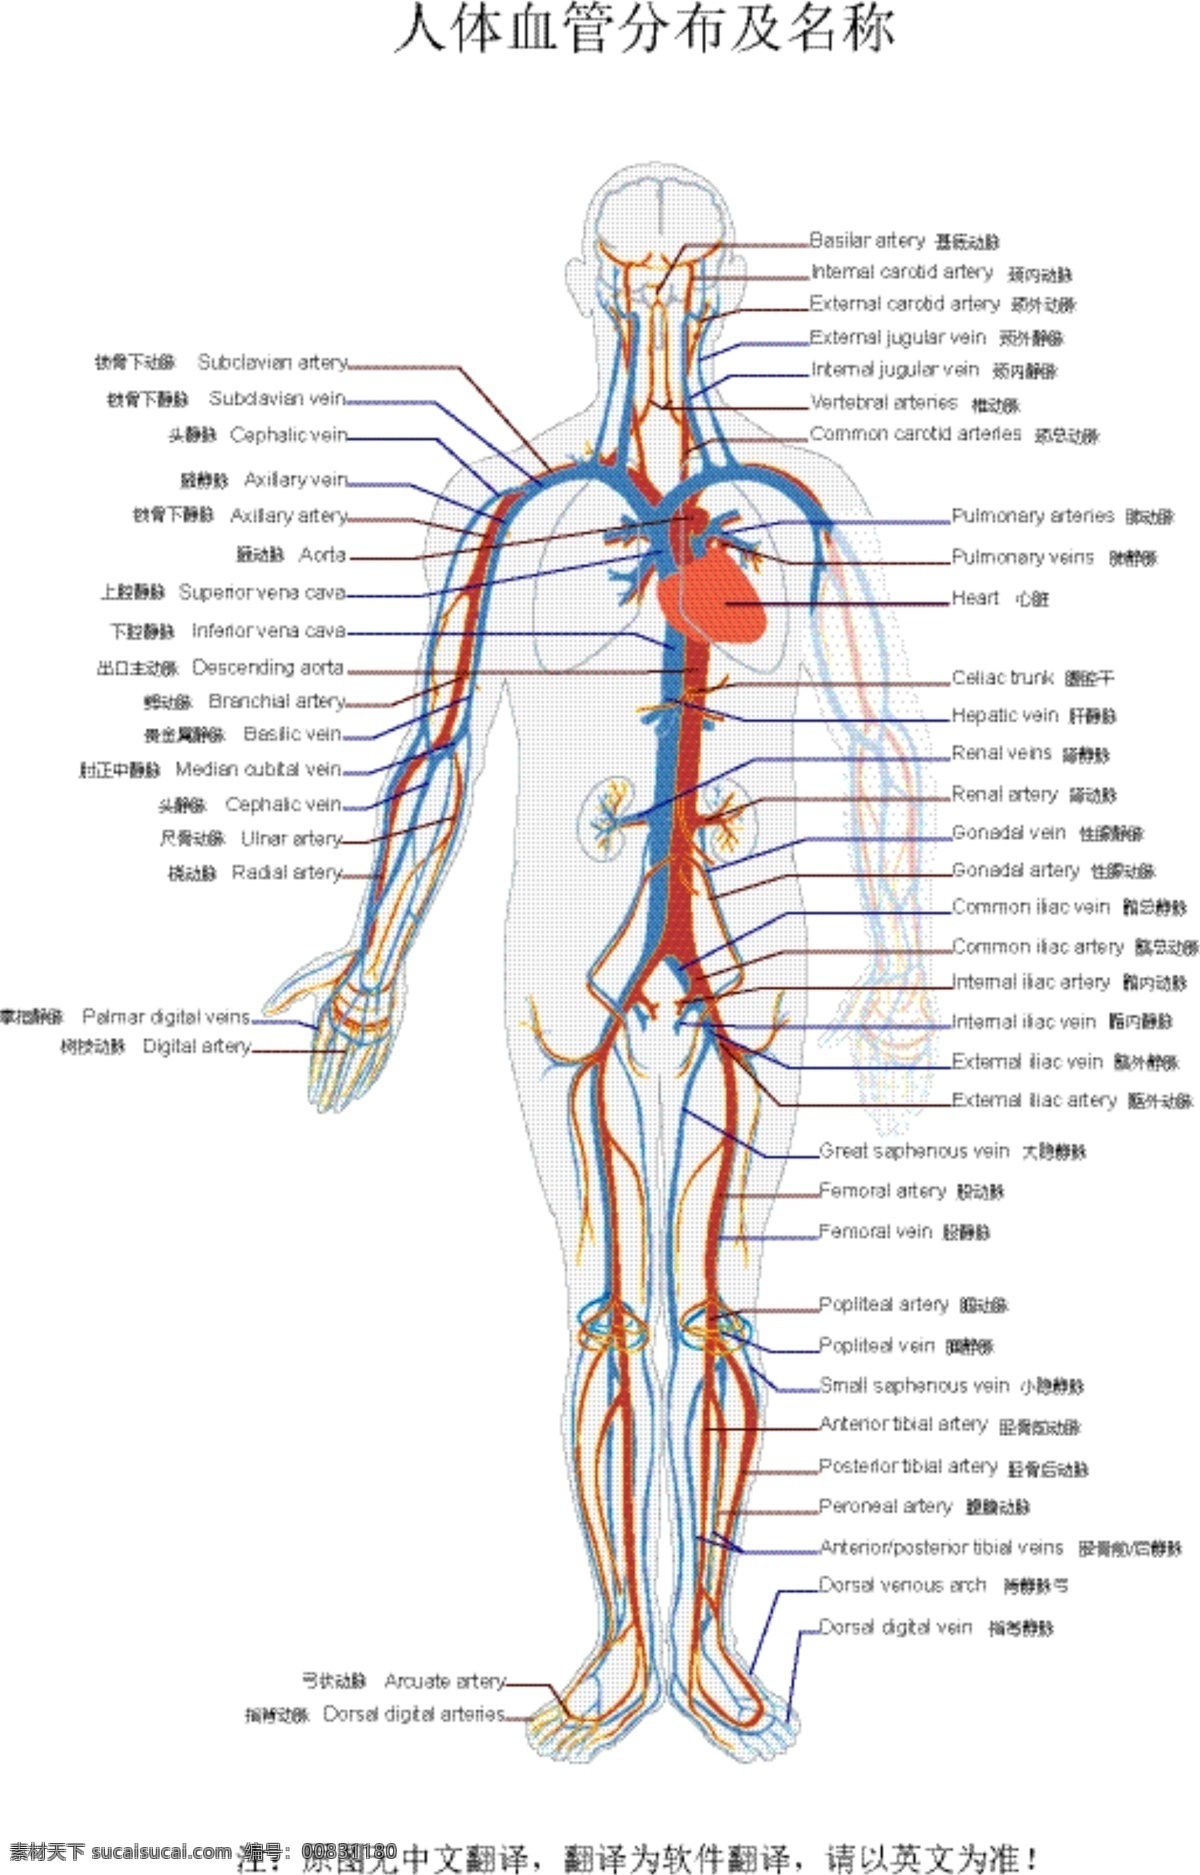 人体 血管 分布 结构图 矢量 人体血管结构 人体血管分布 血管分布图 血管名称 血管结构 人体血管 动脉静脉 血管分布 血 医学 源文件素材 现代科技 医疗护理